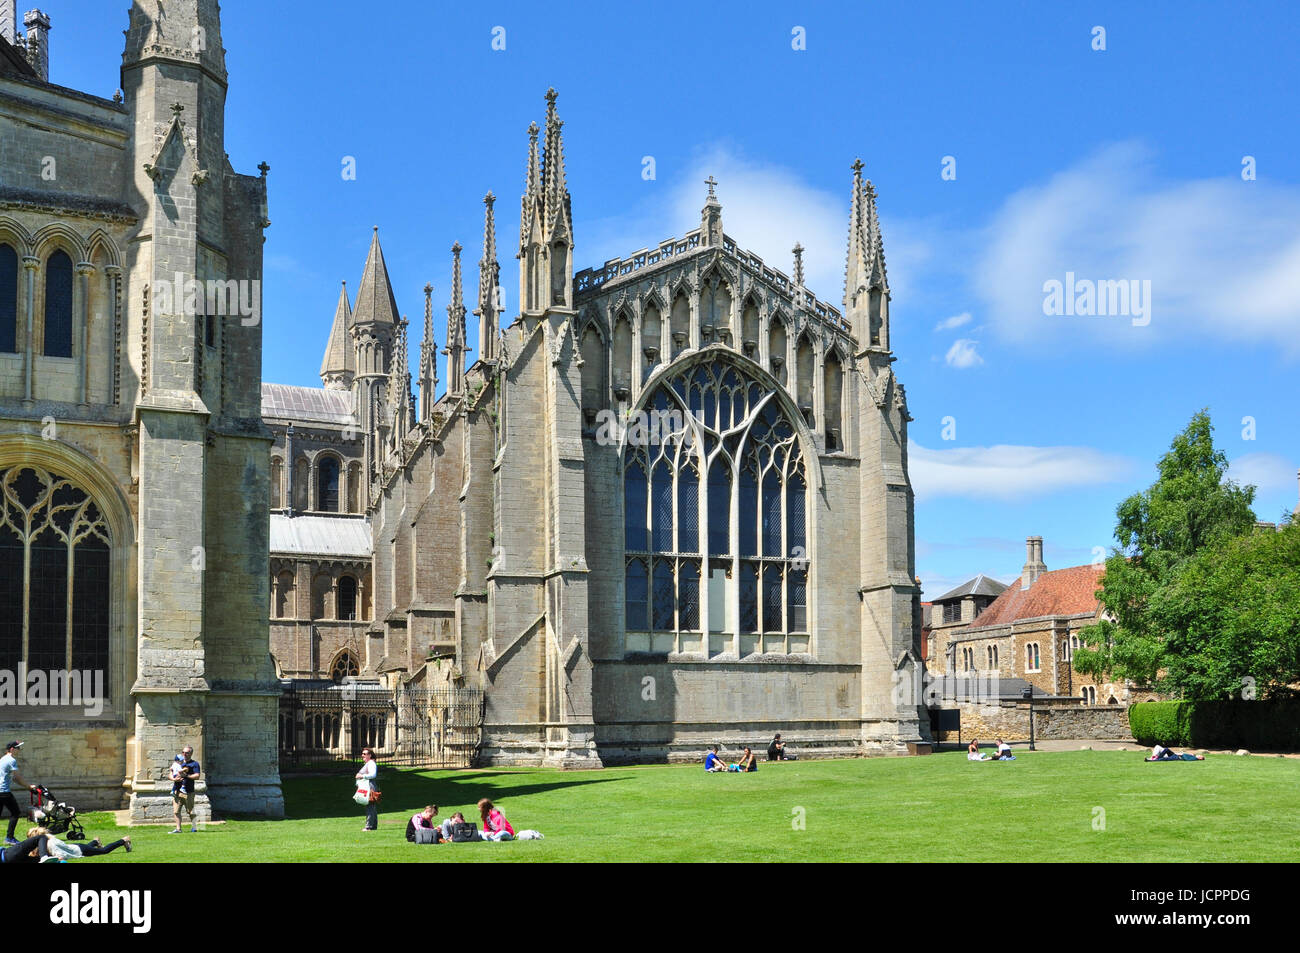 Lady Chapel, Ely Cathedral, Cambridgeshire, England, UK Stock Photo